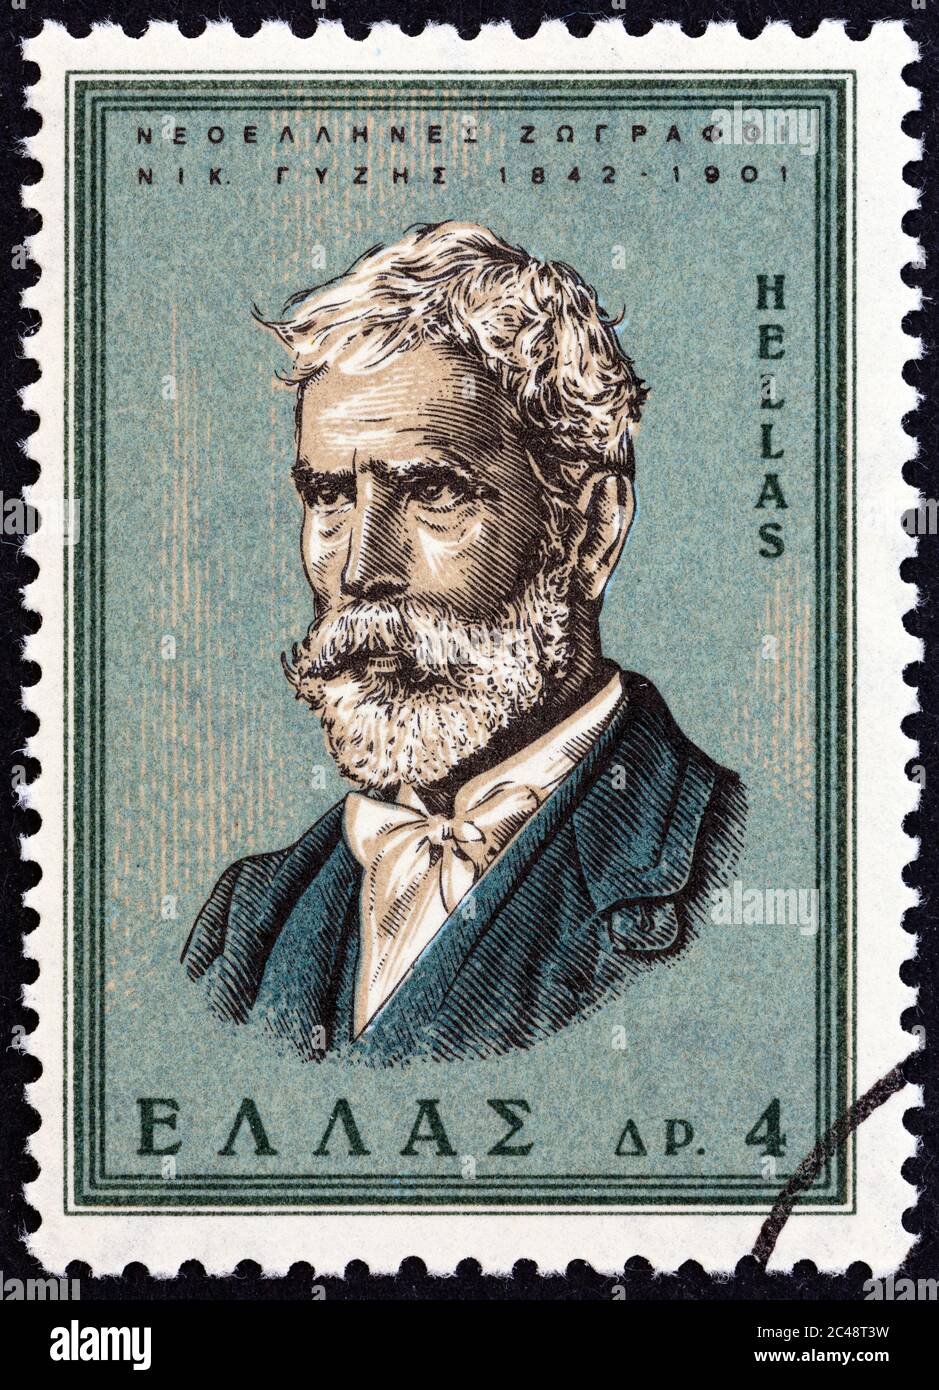 GRÈCE - VERS 1966 : un timbre imprimé en Grèce à partir du numéro de 'Modern Greek Painters' montre Nikolaos Gyzis, vers 1966. Banque D'Images